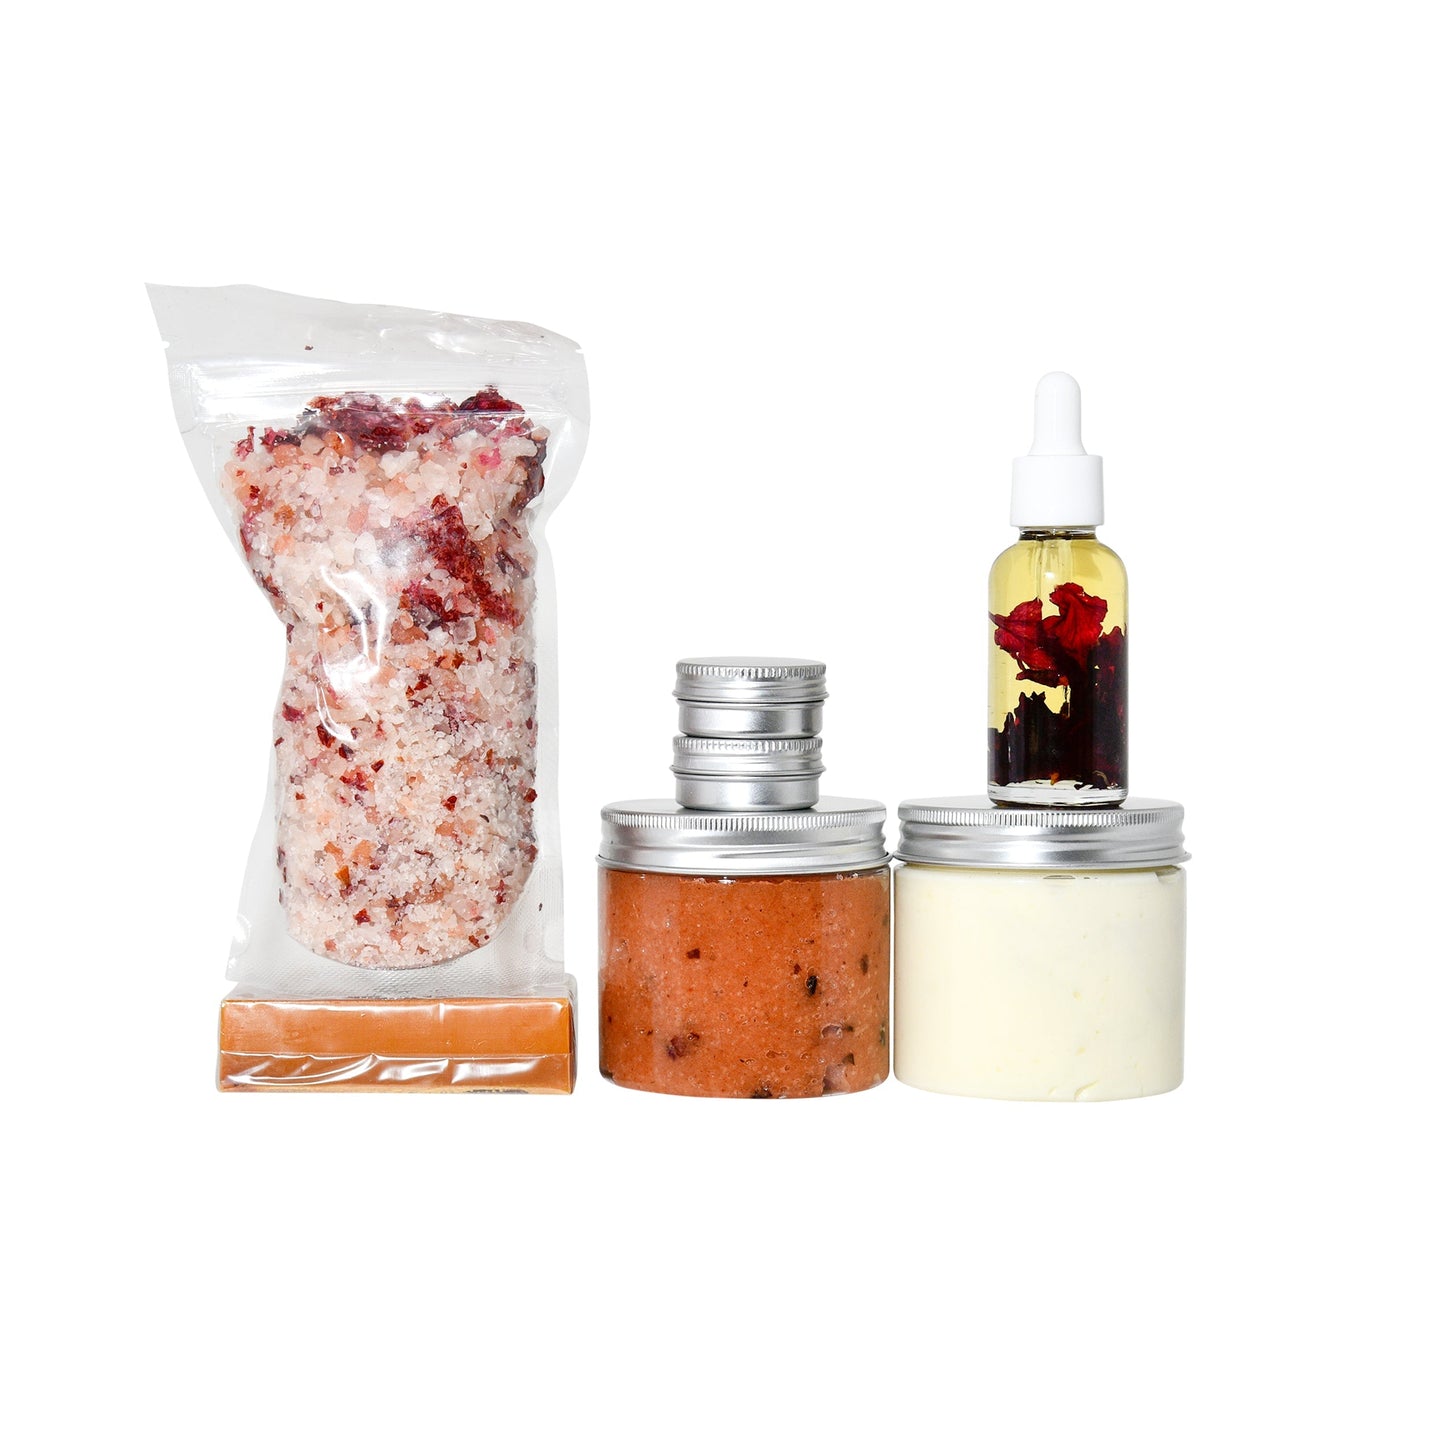 Skin and bodycare starter kit - sample kit